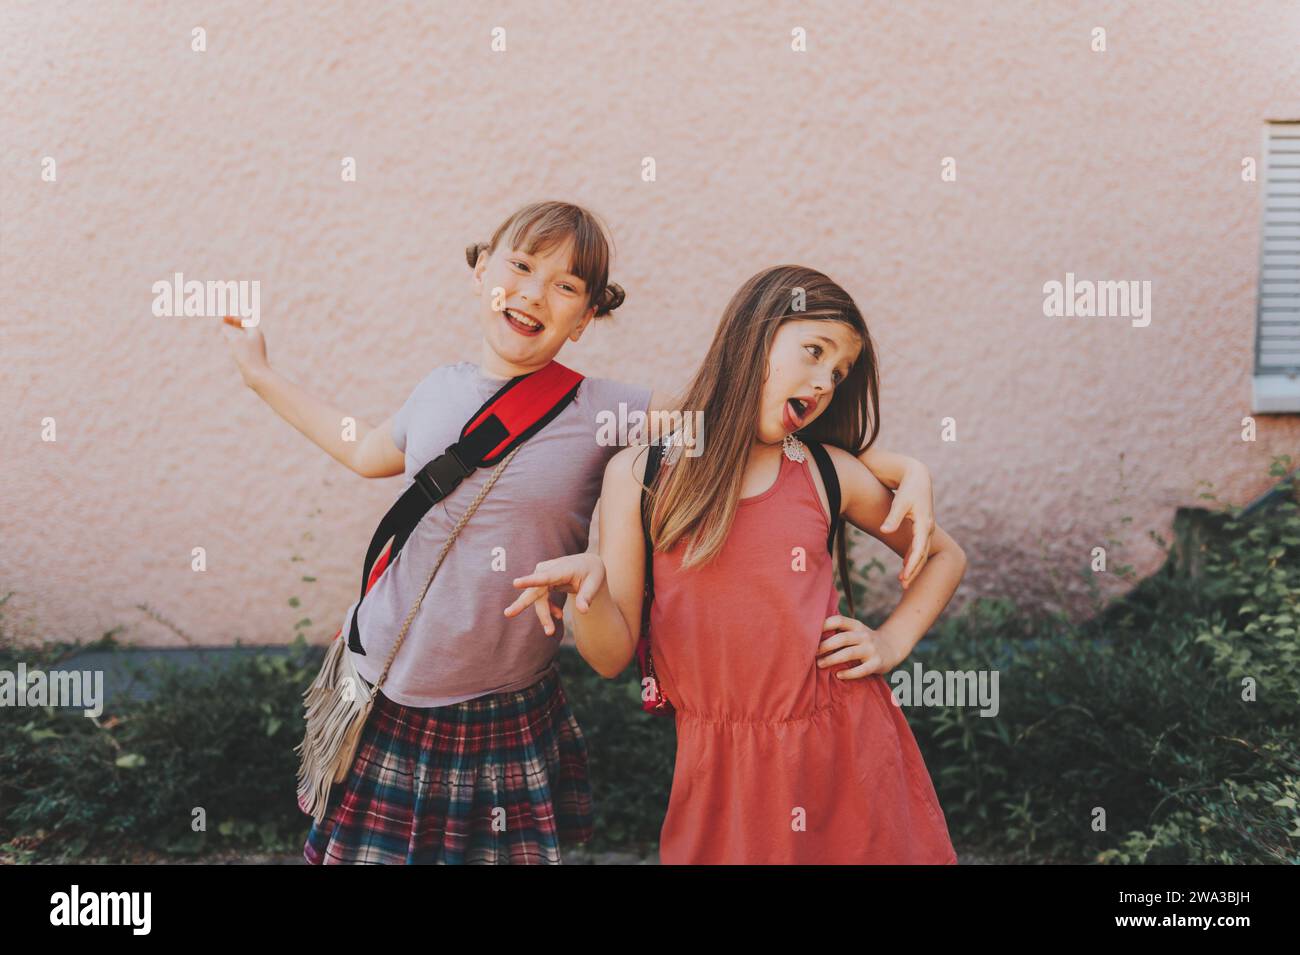 Deux filles drôles faisant grimace, des écolières idiotes jouant ensemble après l'école Banque D'Images